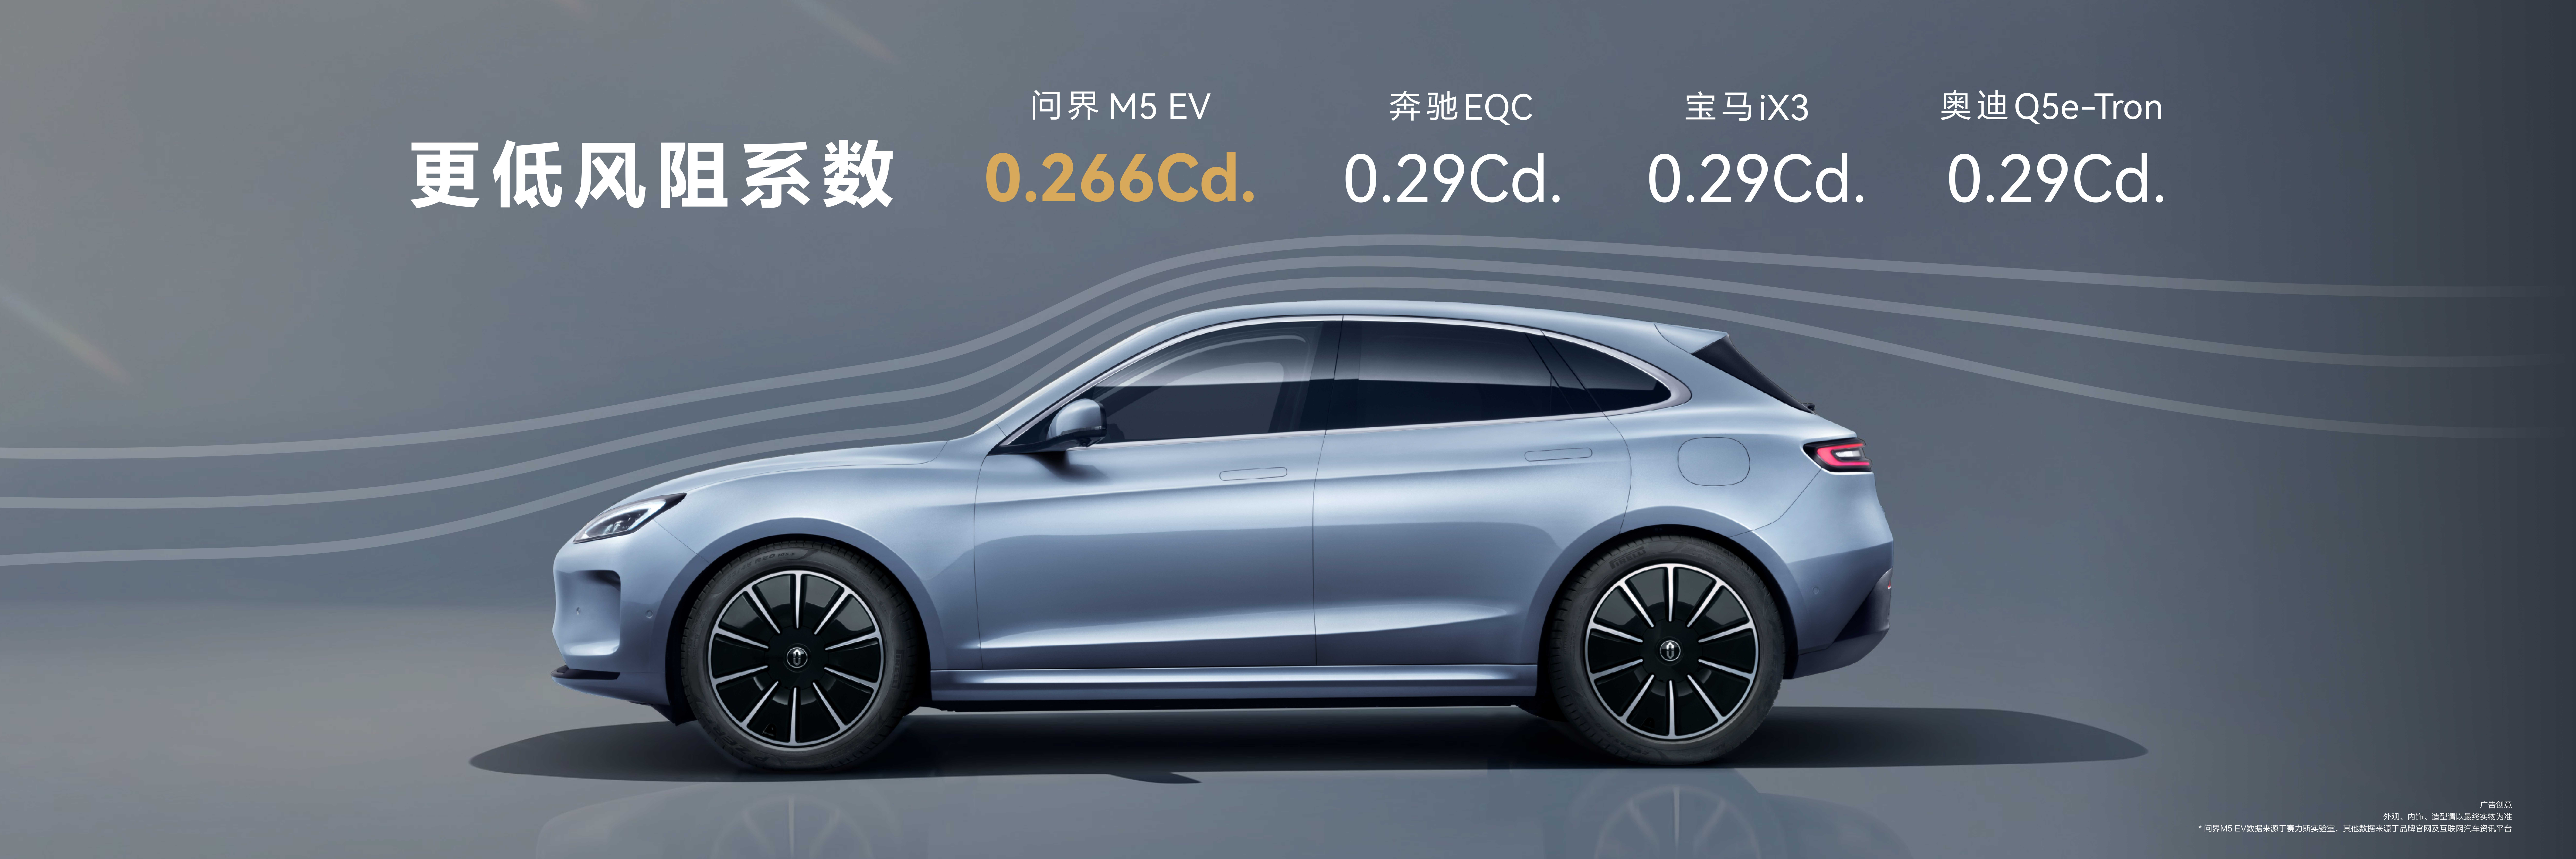 f89eaedfcee486aac11eac94878651dd - Wenjie M5 EV non è alto in Cina, ma non sottovalutate la determinazione di Huawei